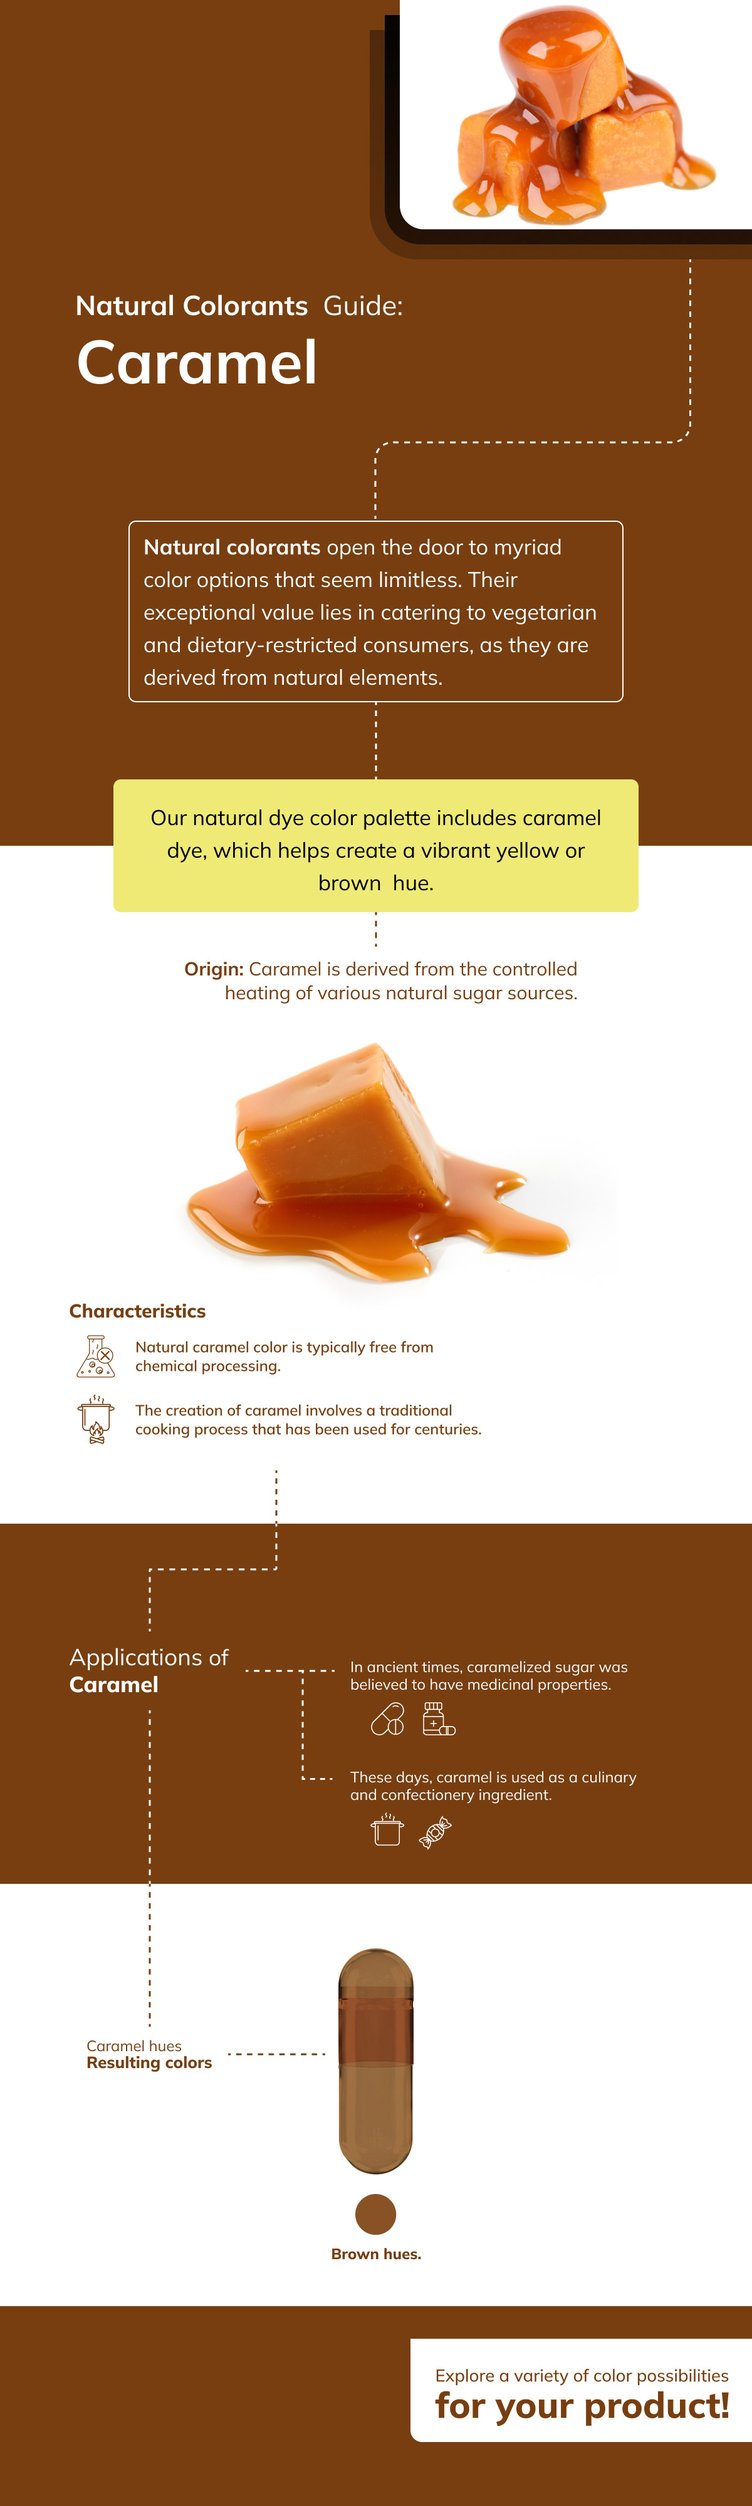 Infografia Natural colorant caramel